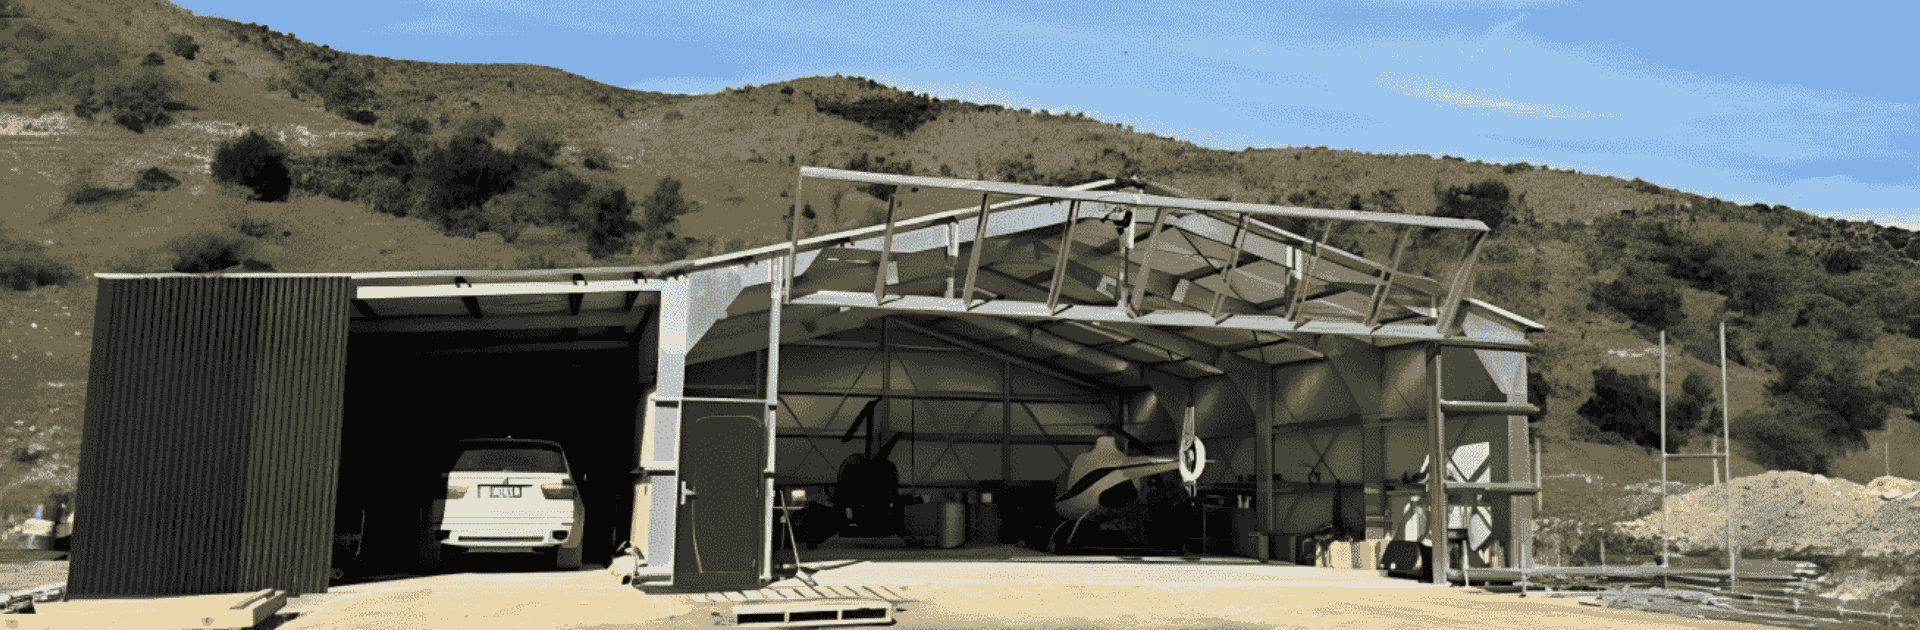 Aircraft Hangars Image